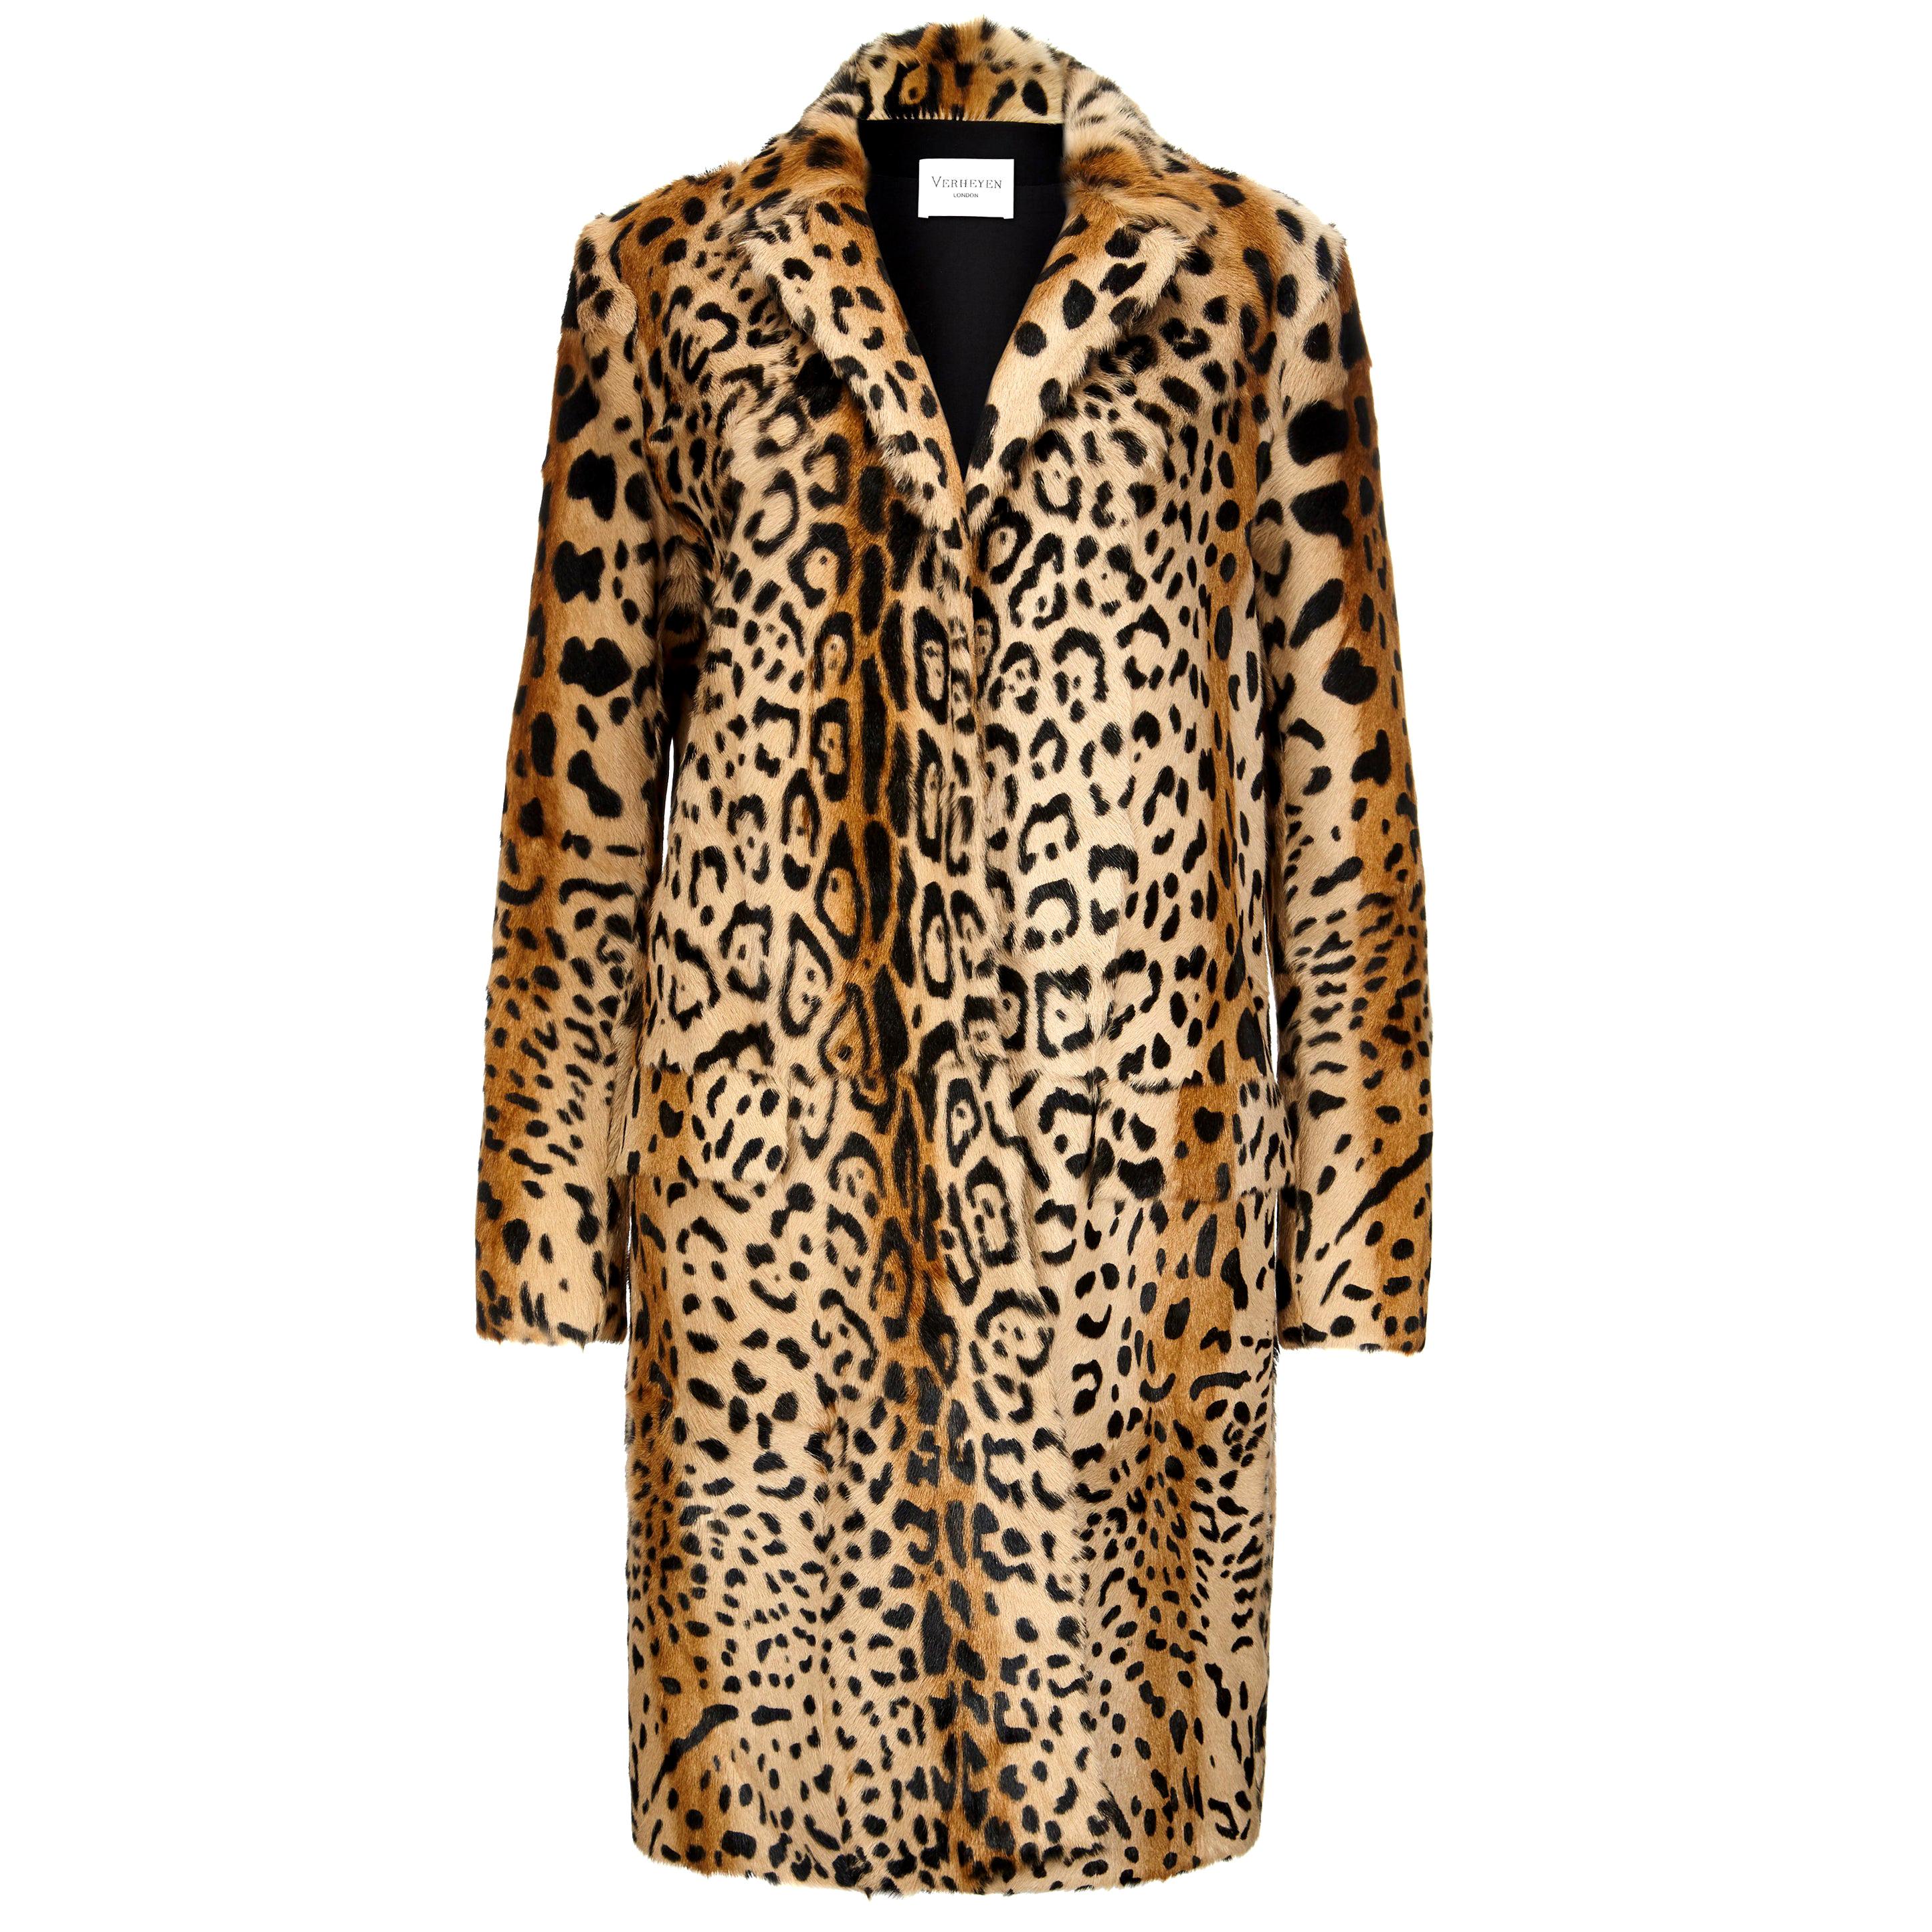 Verheyen London Leopard Print Coat in Natural Goat Hair Fur UK 12 - Brand New